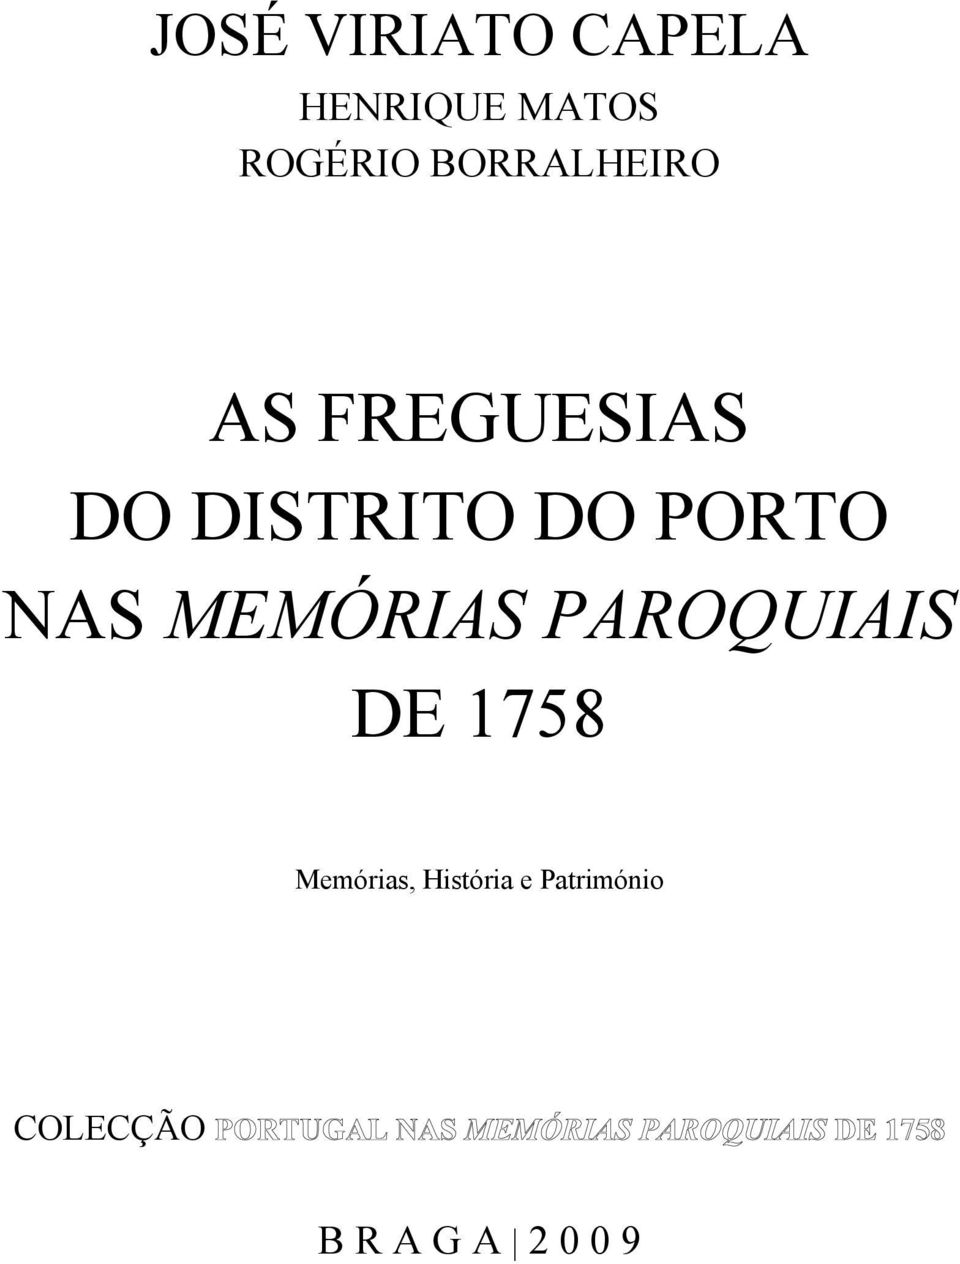 PORTO NAS MEMÓRIAS PAROQUIAIS DE 1758